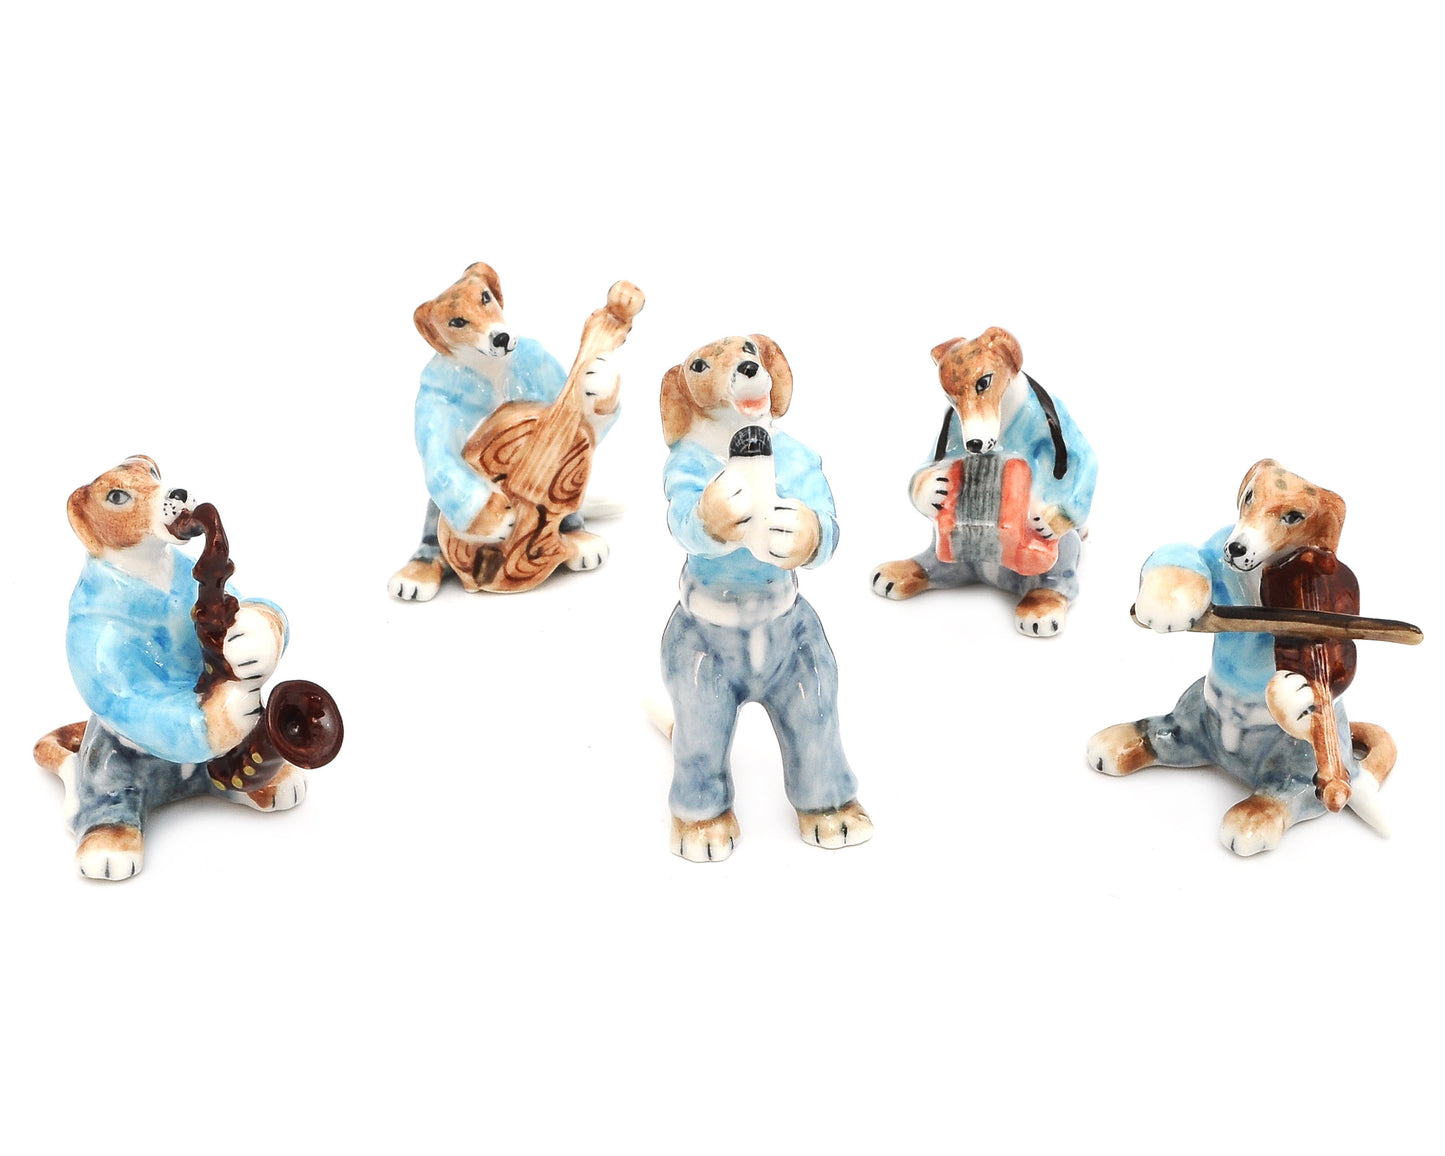 Greyhound Dog Music Band Handmade Ceramic Figurine Miniature Home Décor